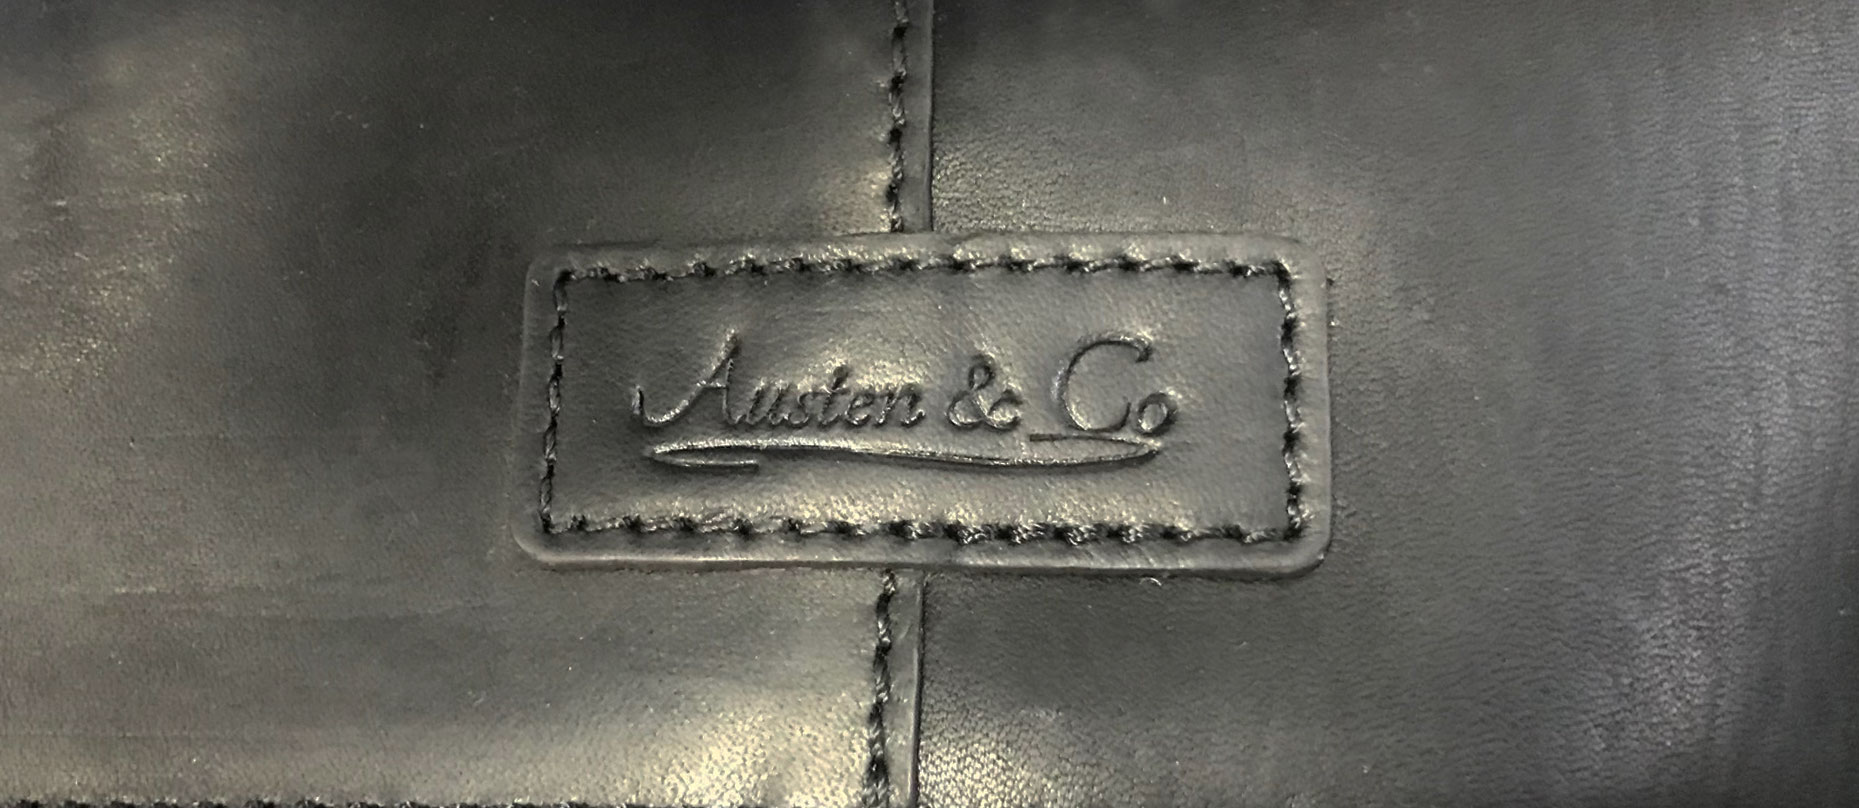 Black Suit Carrier Austen & Co Logo